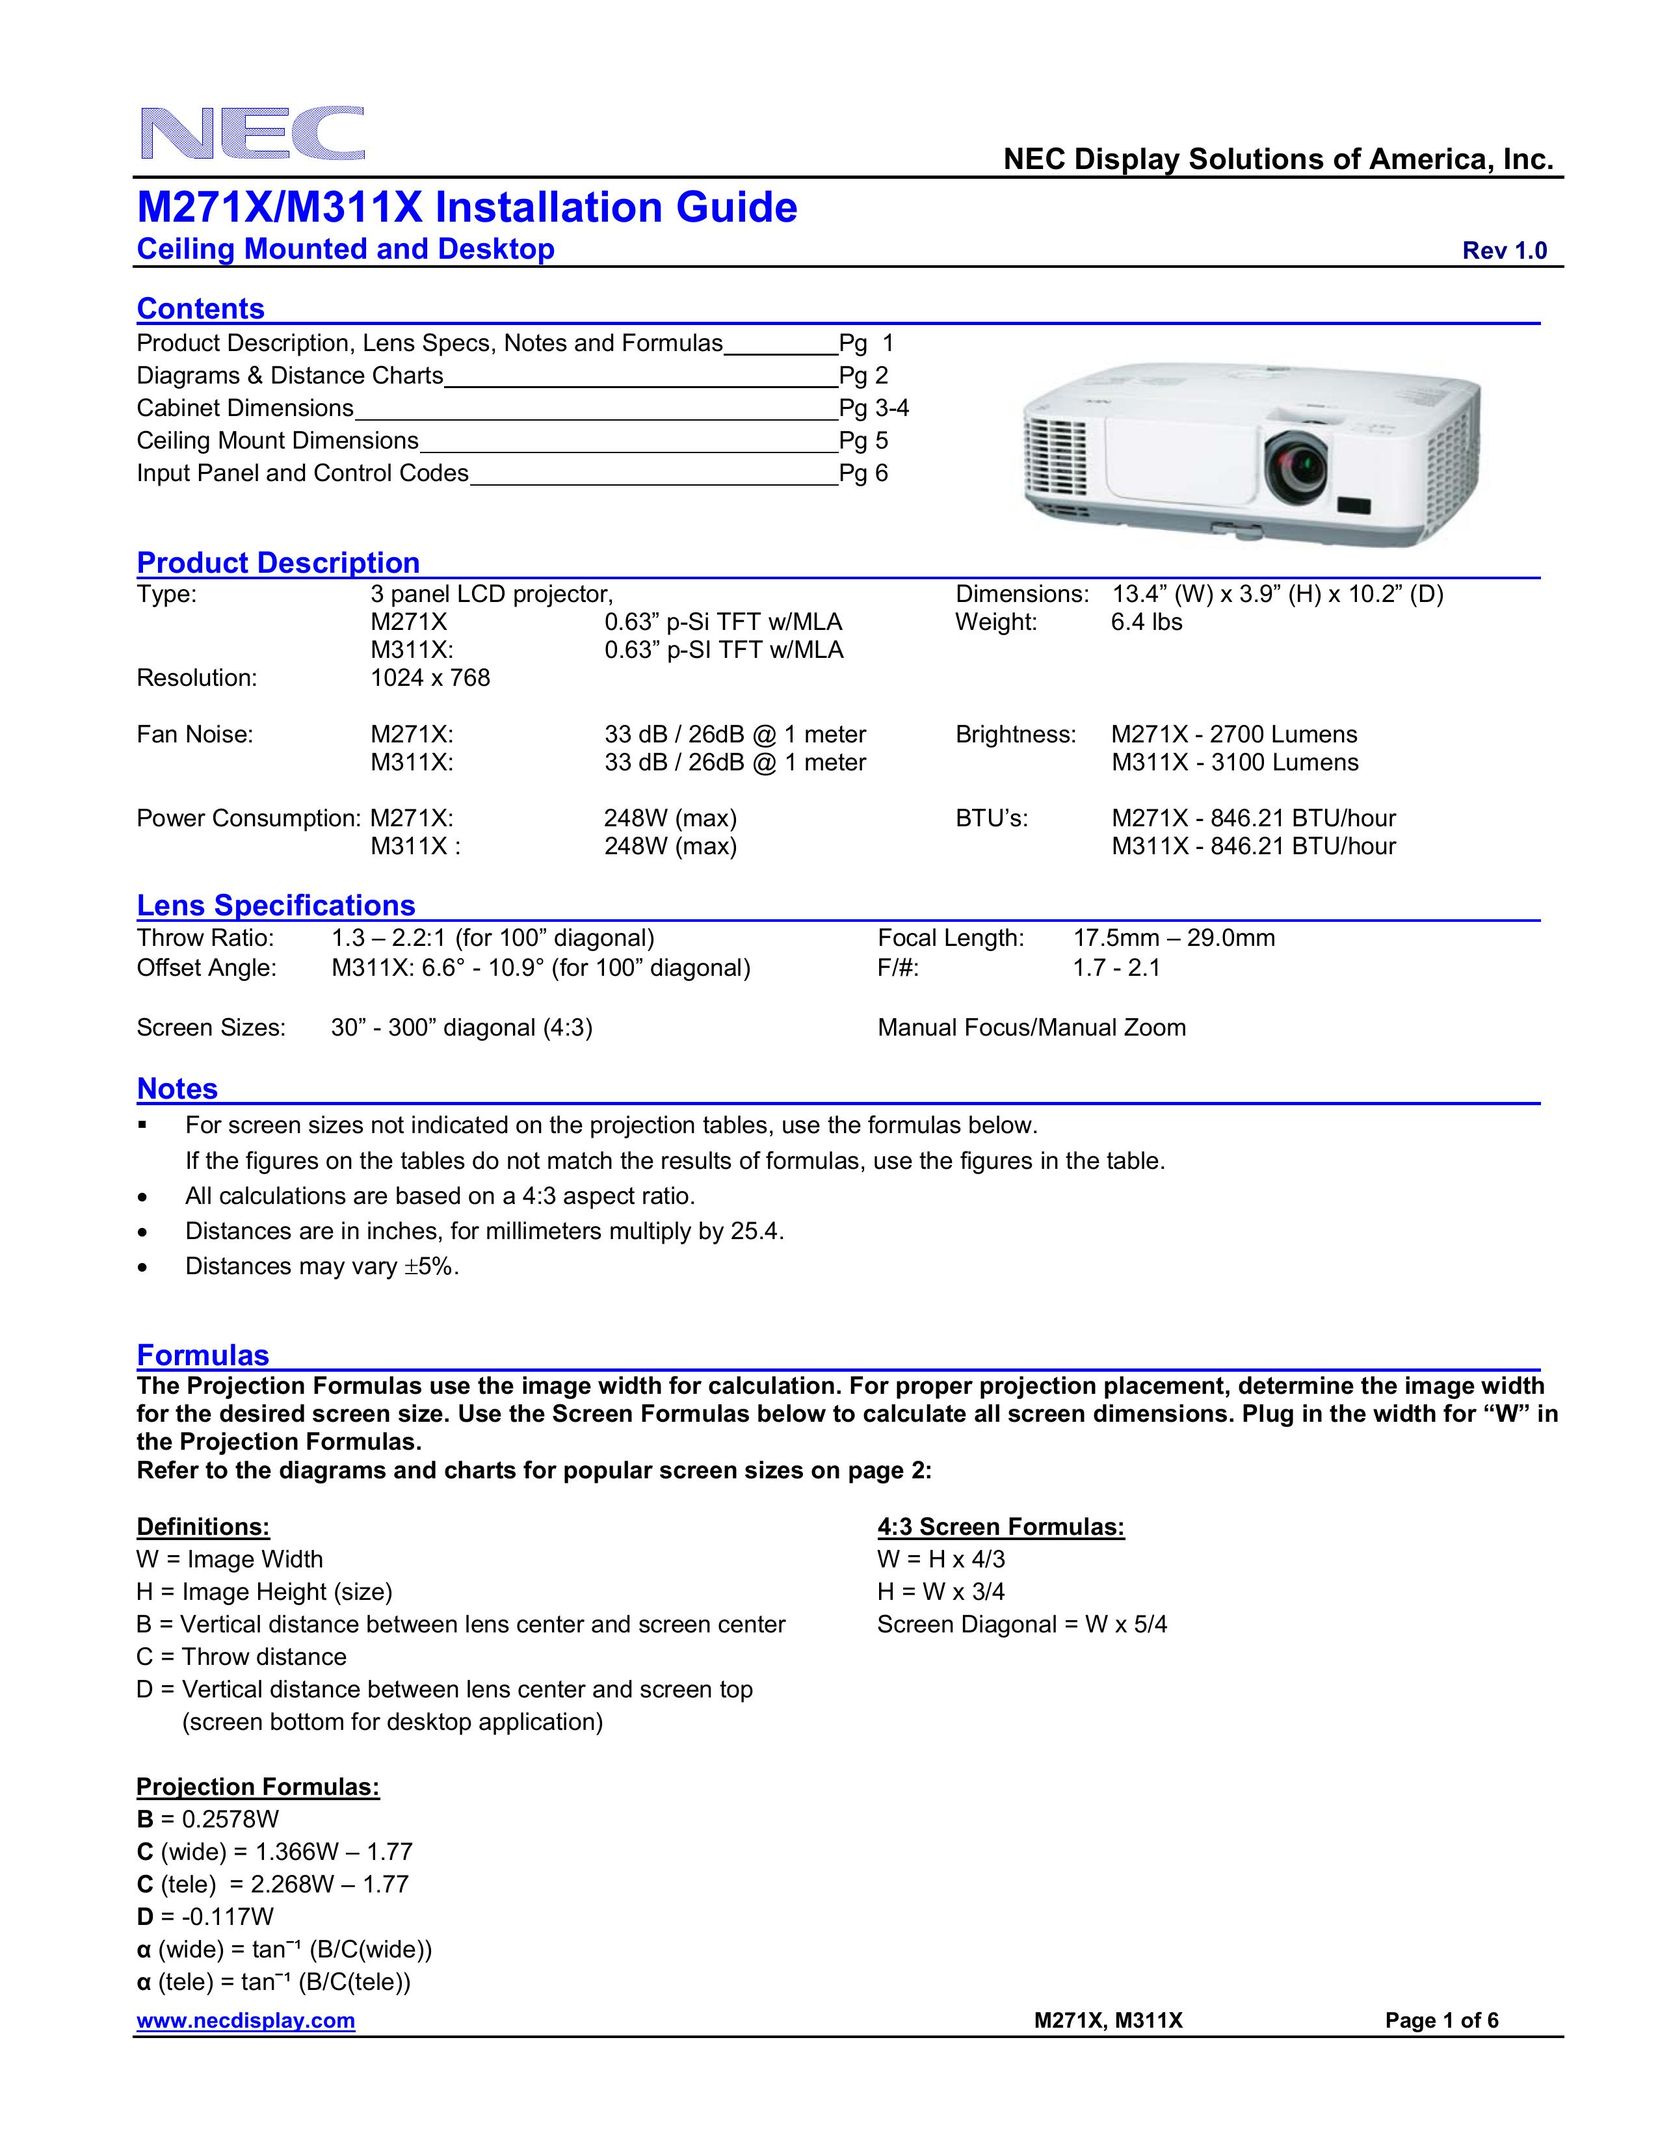 NEC M271X Projector User Manual